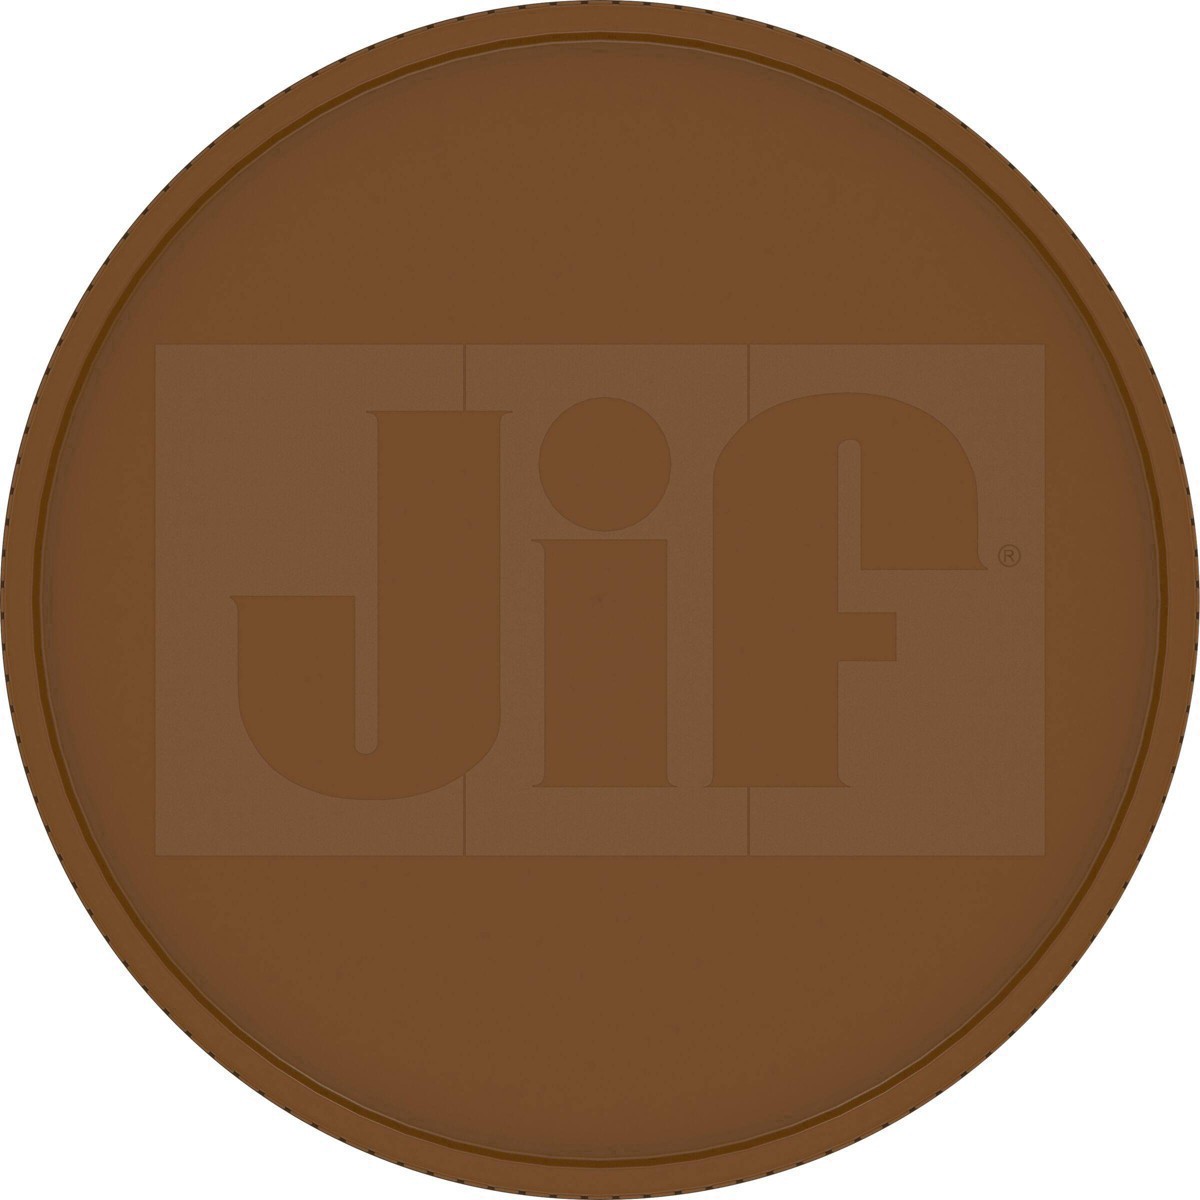 slide 28 of 41, Jif Natural Crunchy Peanut Butter, 16 oz